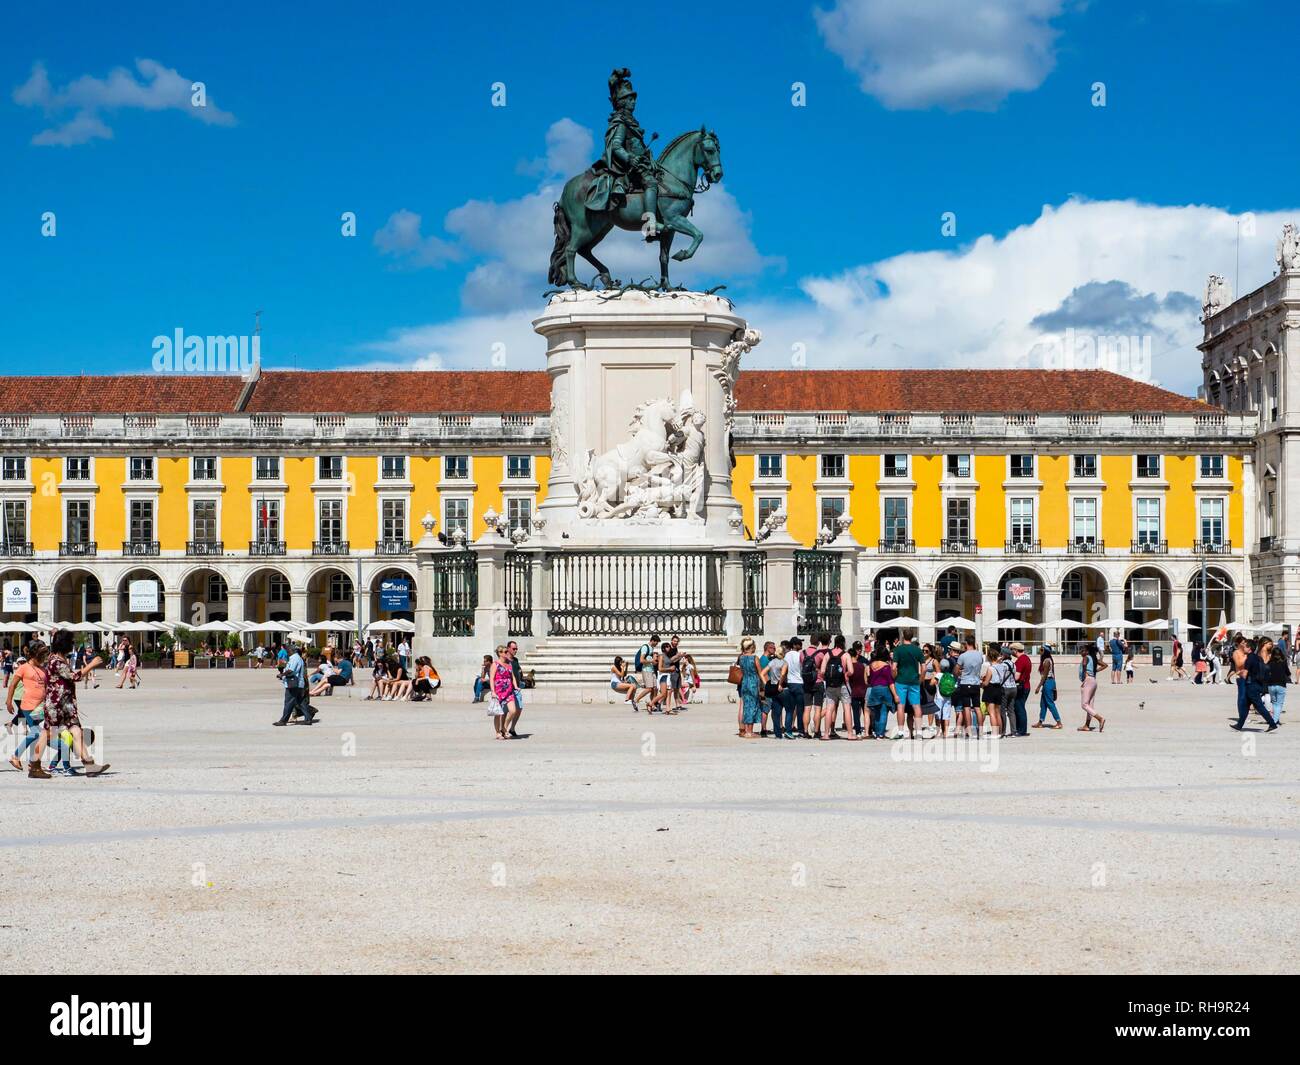 Place of Commerce, Praça do Comercio, Arc de Triomphe Arco da Rua Augusta, equestrian statue of King Jose I, Baixa, Lisbon Stock Photo